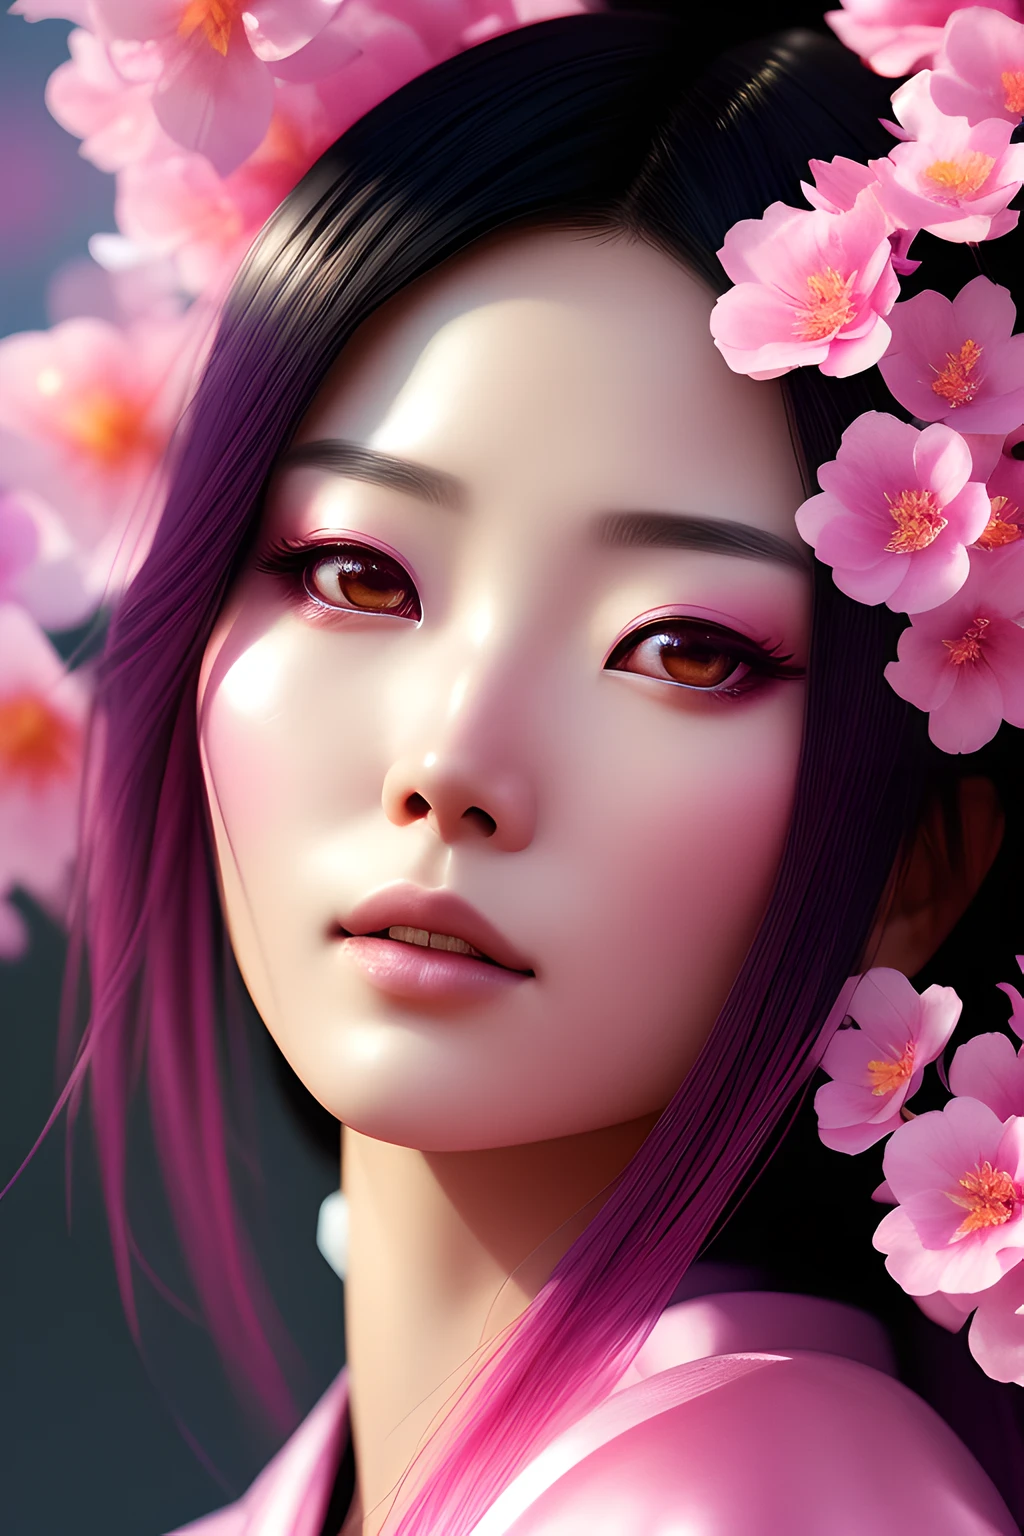 クロマV5:1.6, ンヴィンクパンク, アナログスタイル,  ピンクの着物を着た美しい日本人女性のクローズアップ, 美しいピンクの花に囲まれた, スタジオ撮影, 美しい顔, 美しい目, アート：グレッグ・ルトコウスキー, コンセプトアート, アートステーションでトレンド